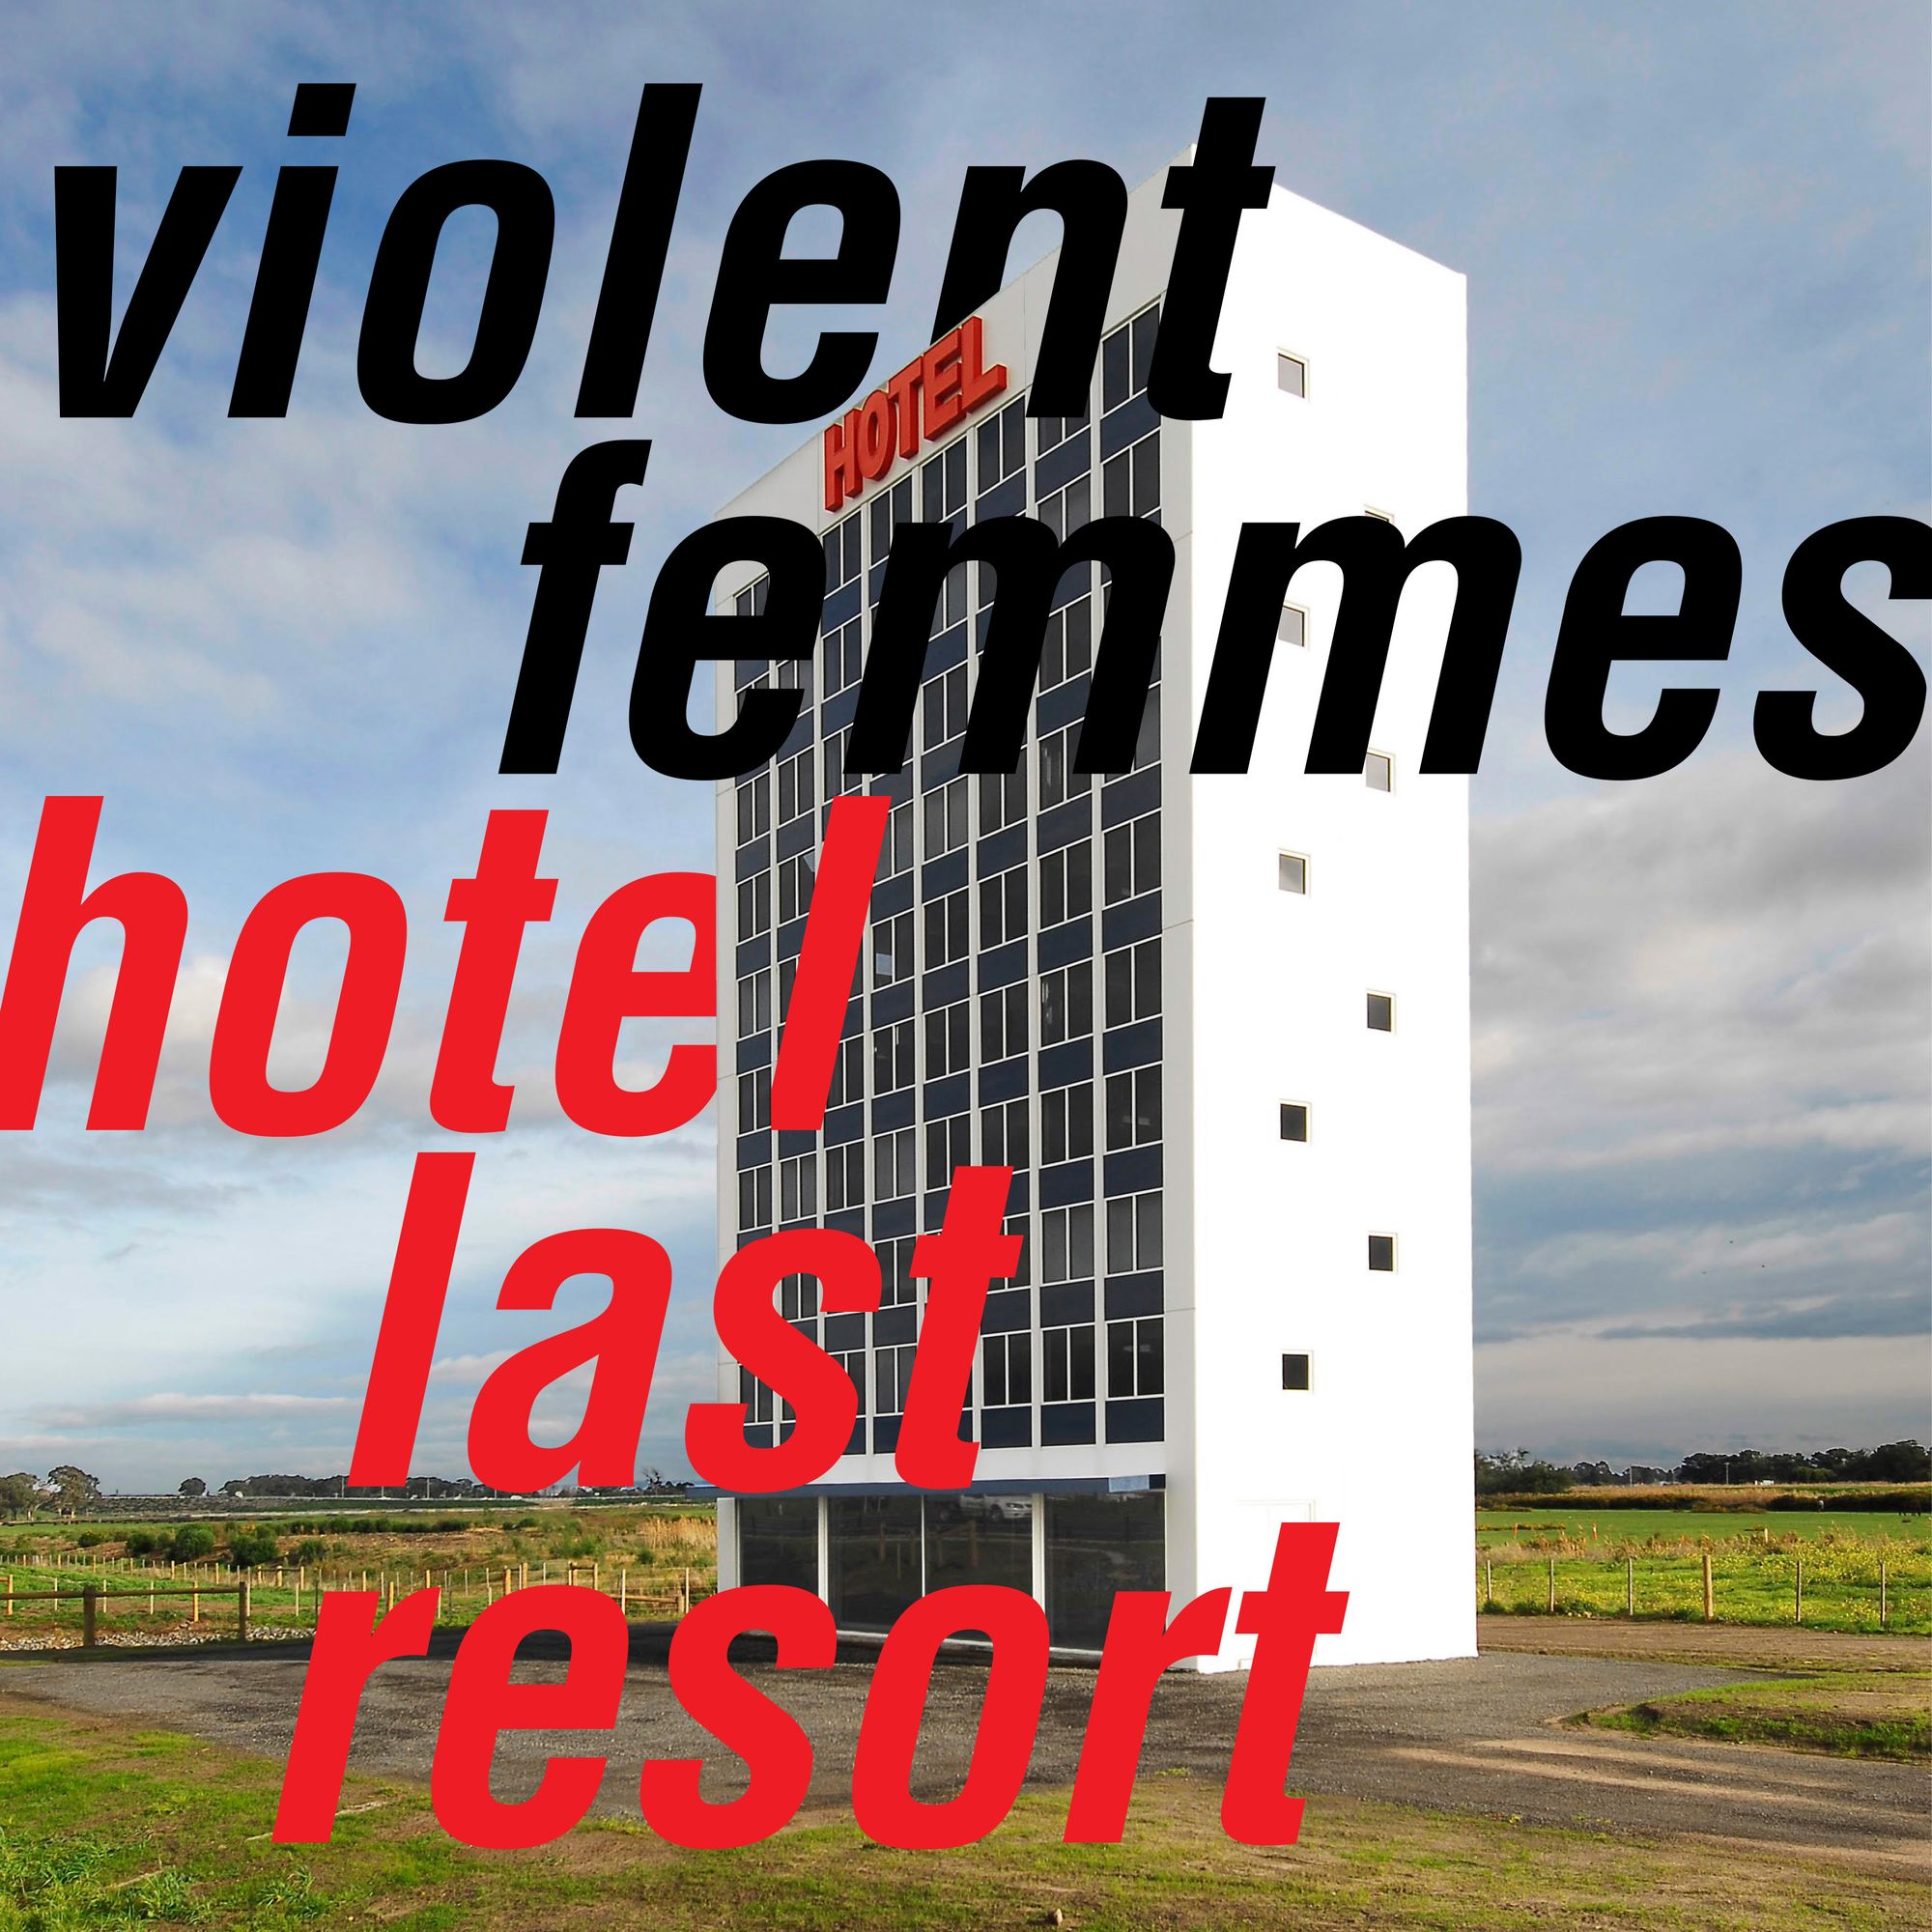 Hotel Last Resort (vinyl)